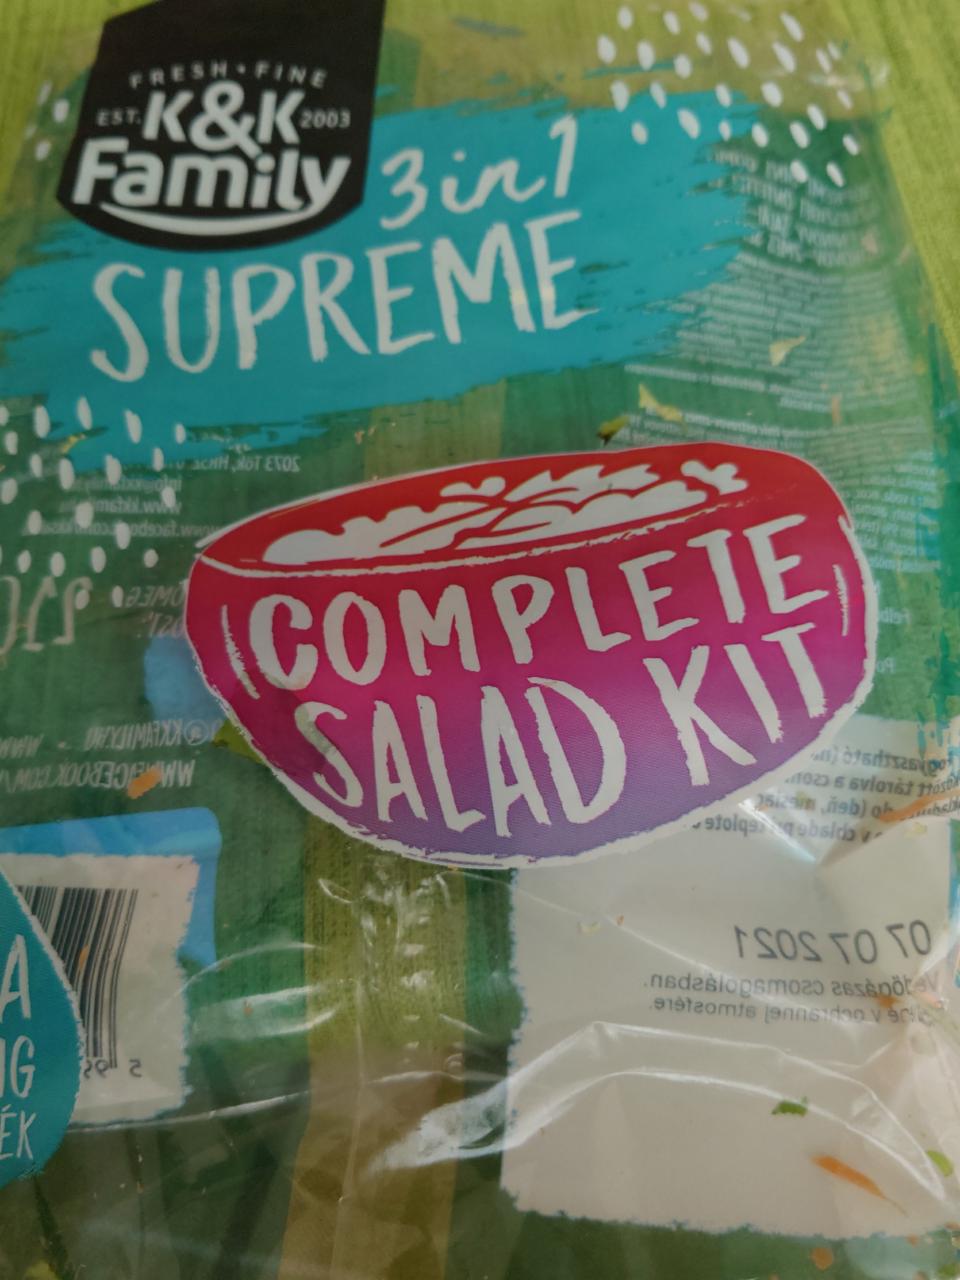 Képek - Supreme 3 in 1 friss salátakeverék magkeverékkel, ezerszigetöntettel K&K Family